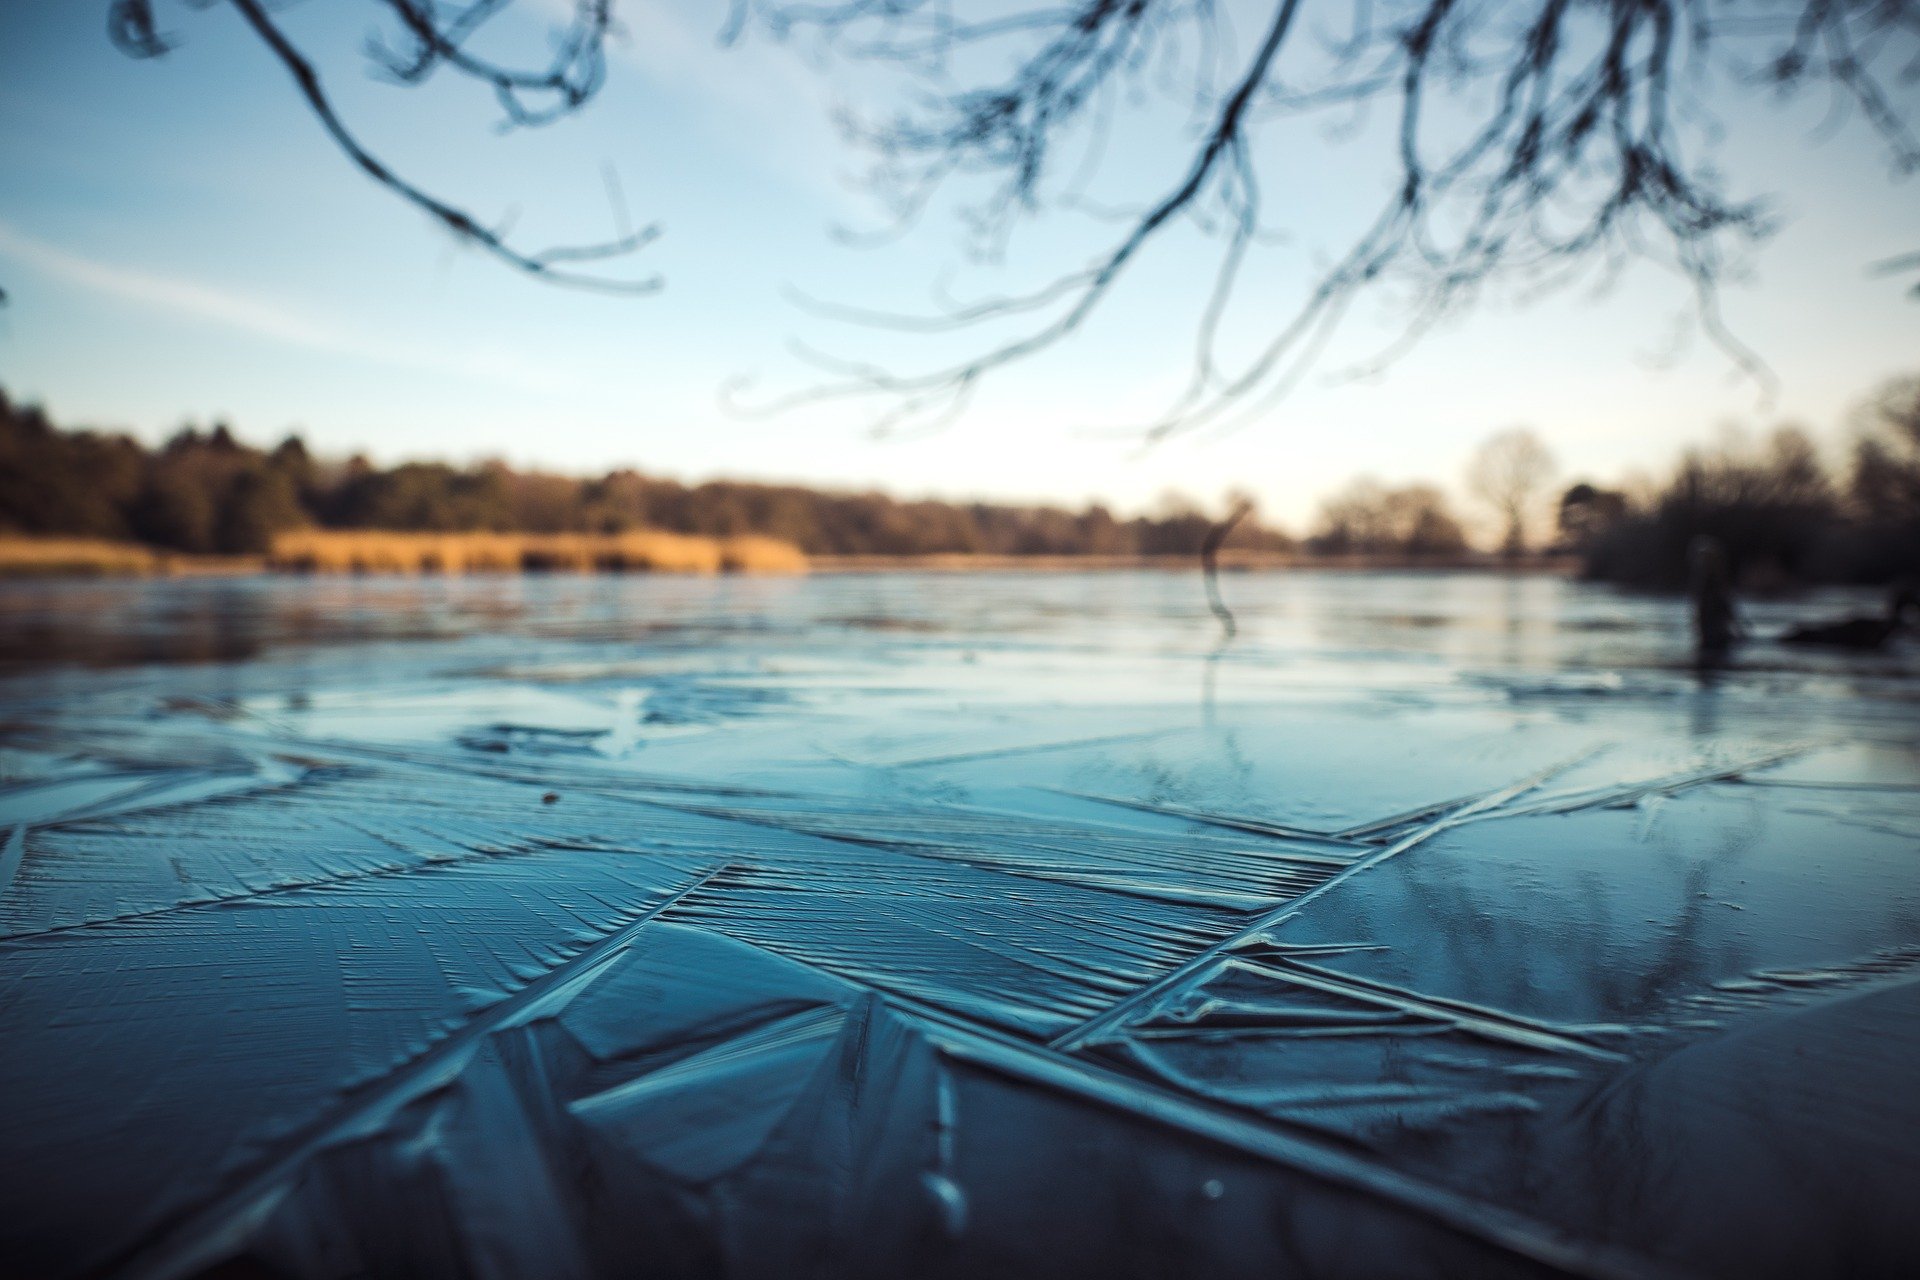 Keskkonnaagentuuri uudse jääkaardi abil on võimalik jälgida kogu Eesti jääinfot